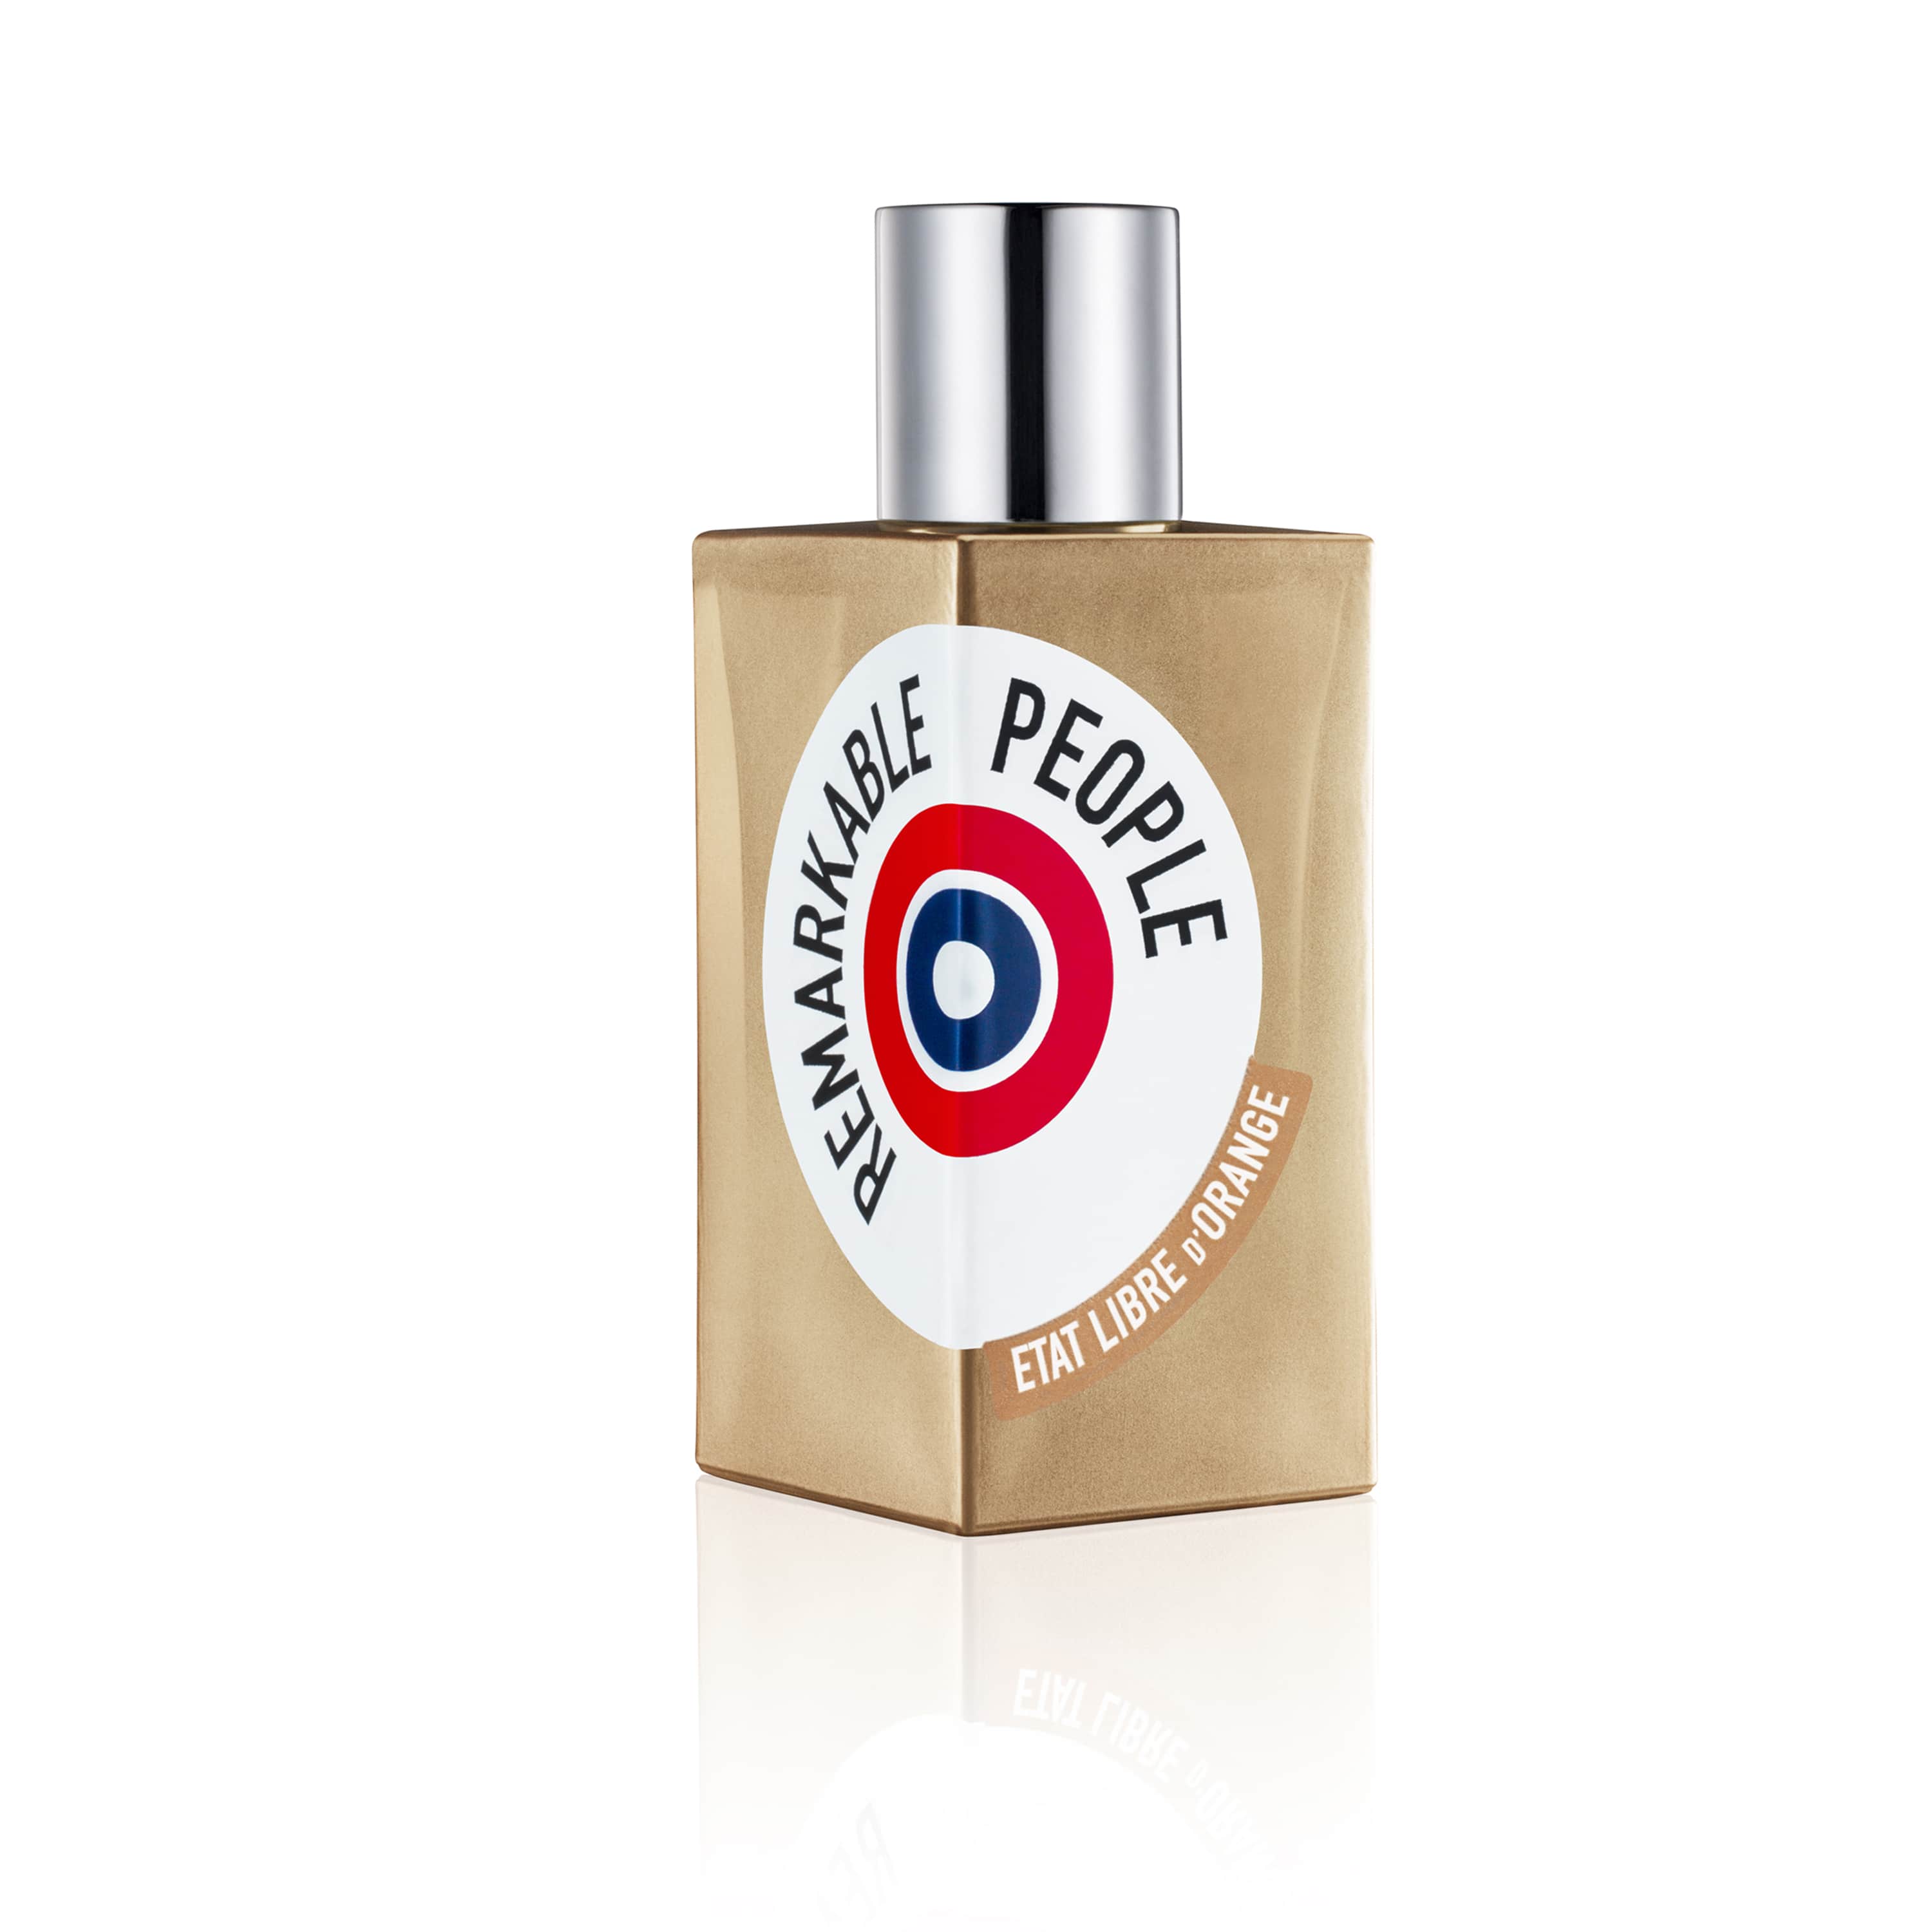 Remarkable People - Eau de Parfum | Etat Libre d'Orange